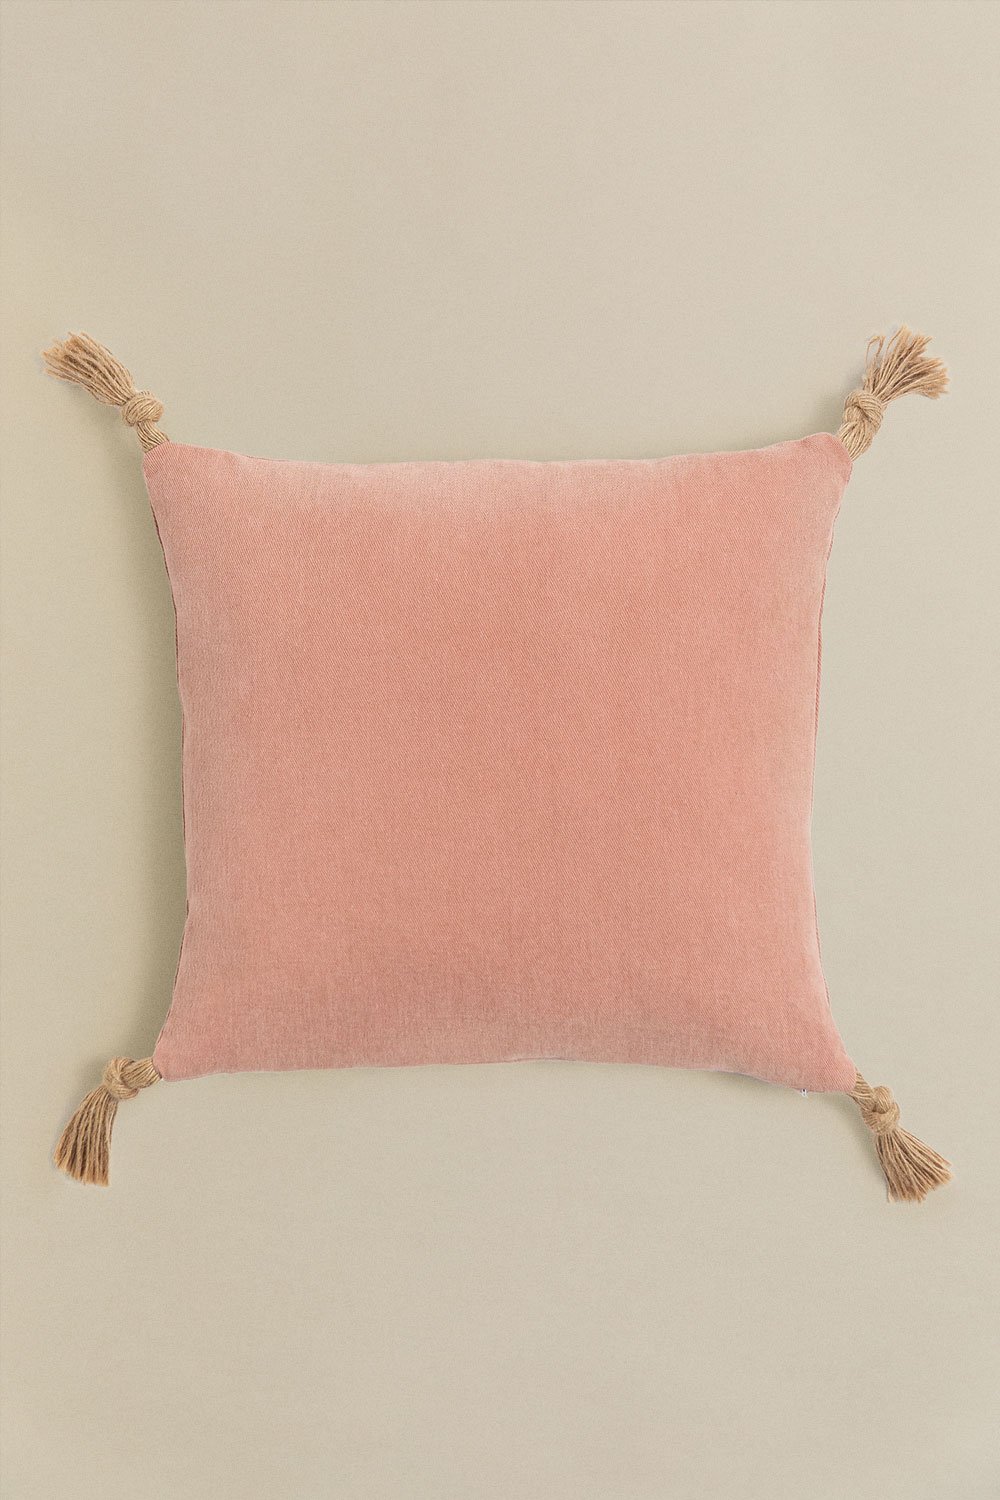 Cuscino quadrato in cotone (45x45 cm) Almiz Style, immagine della galleria 1